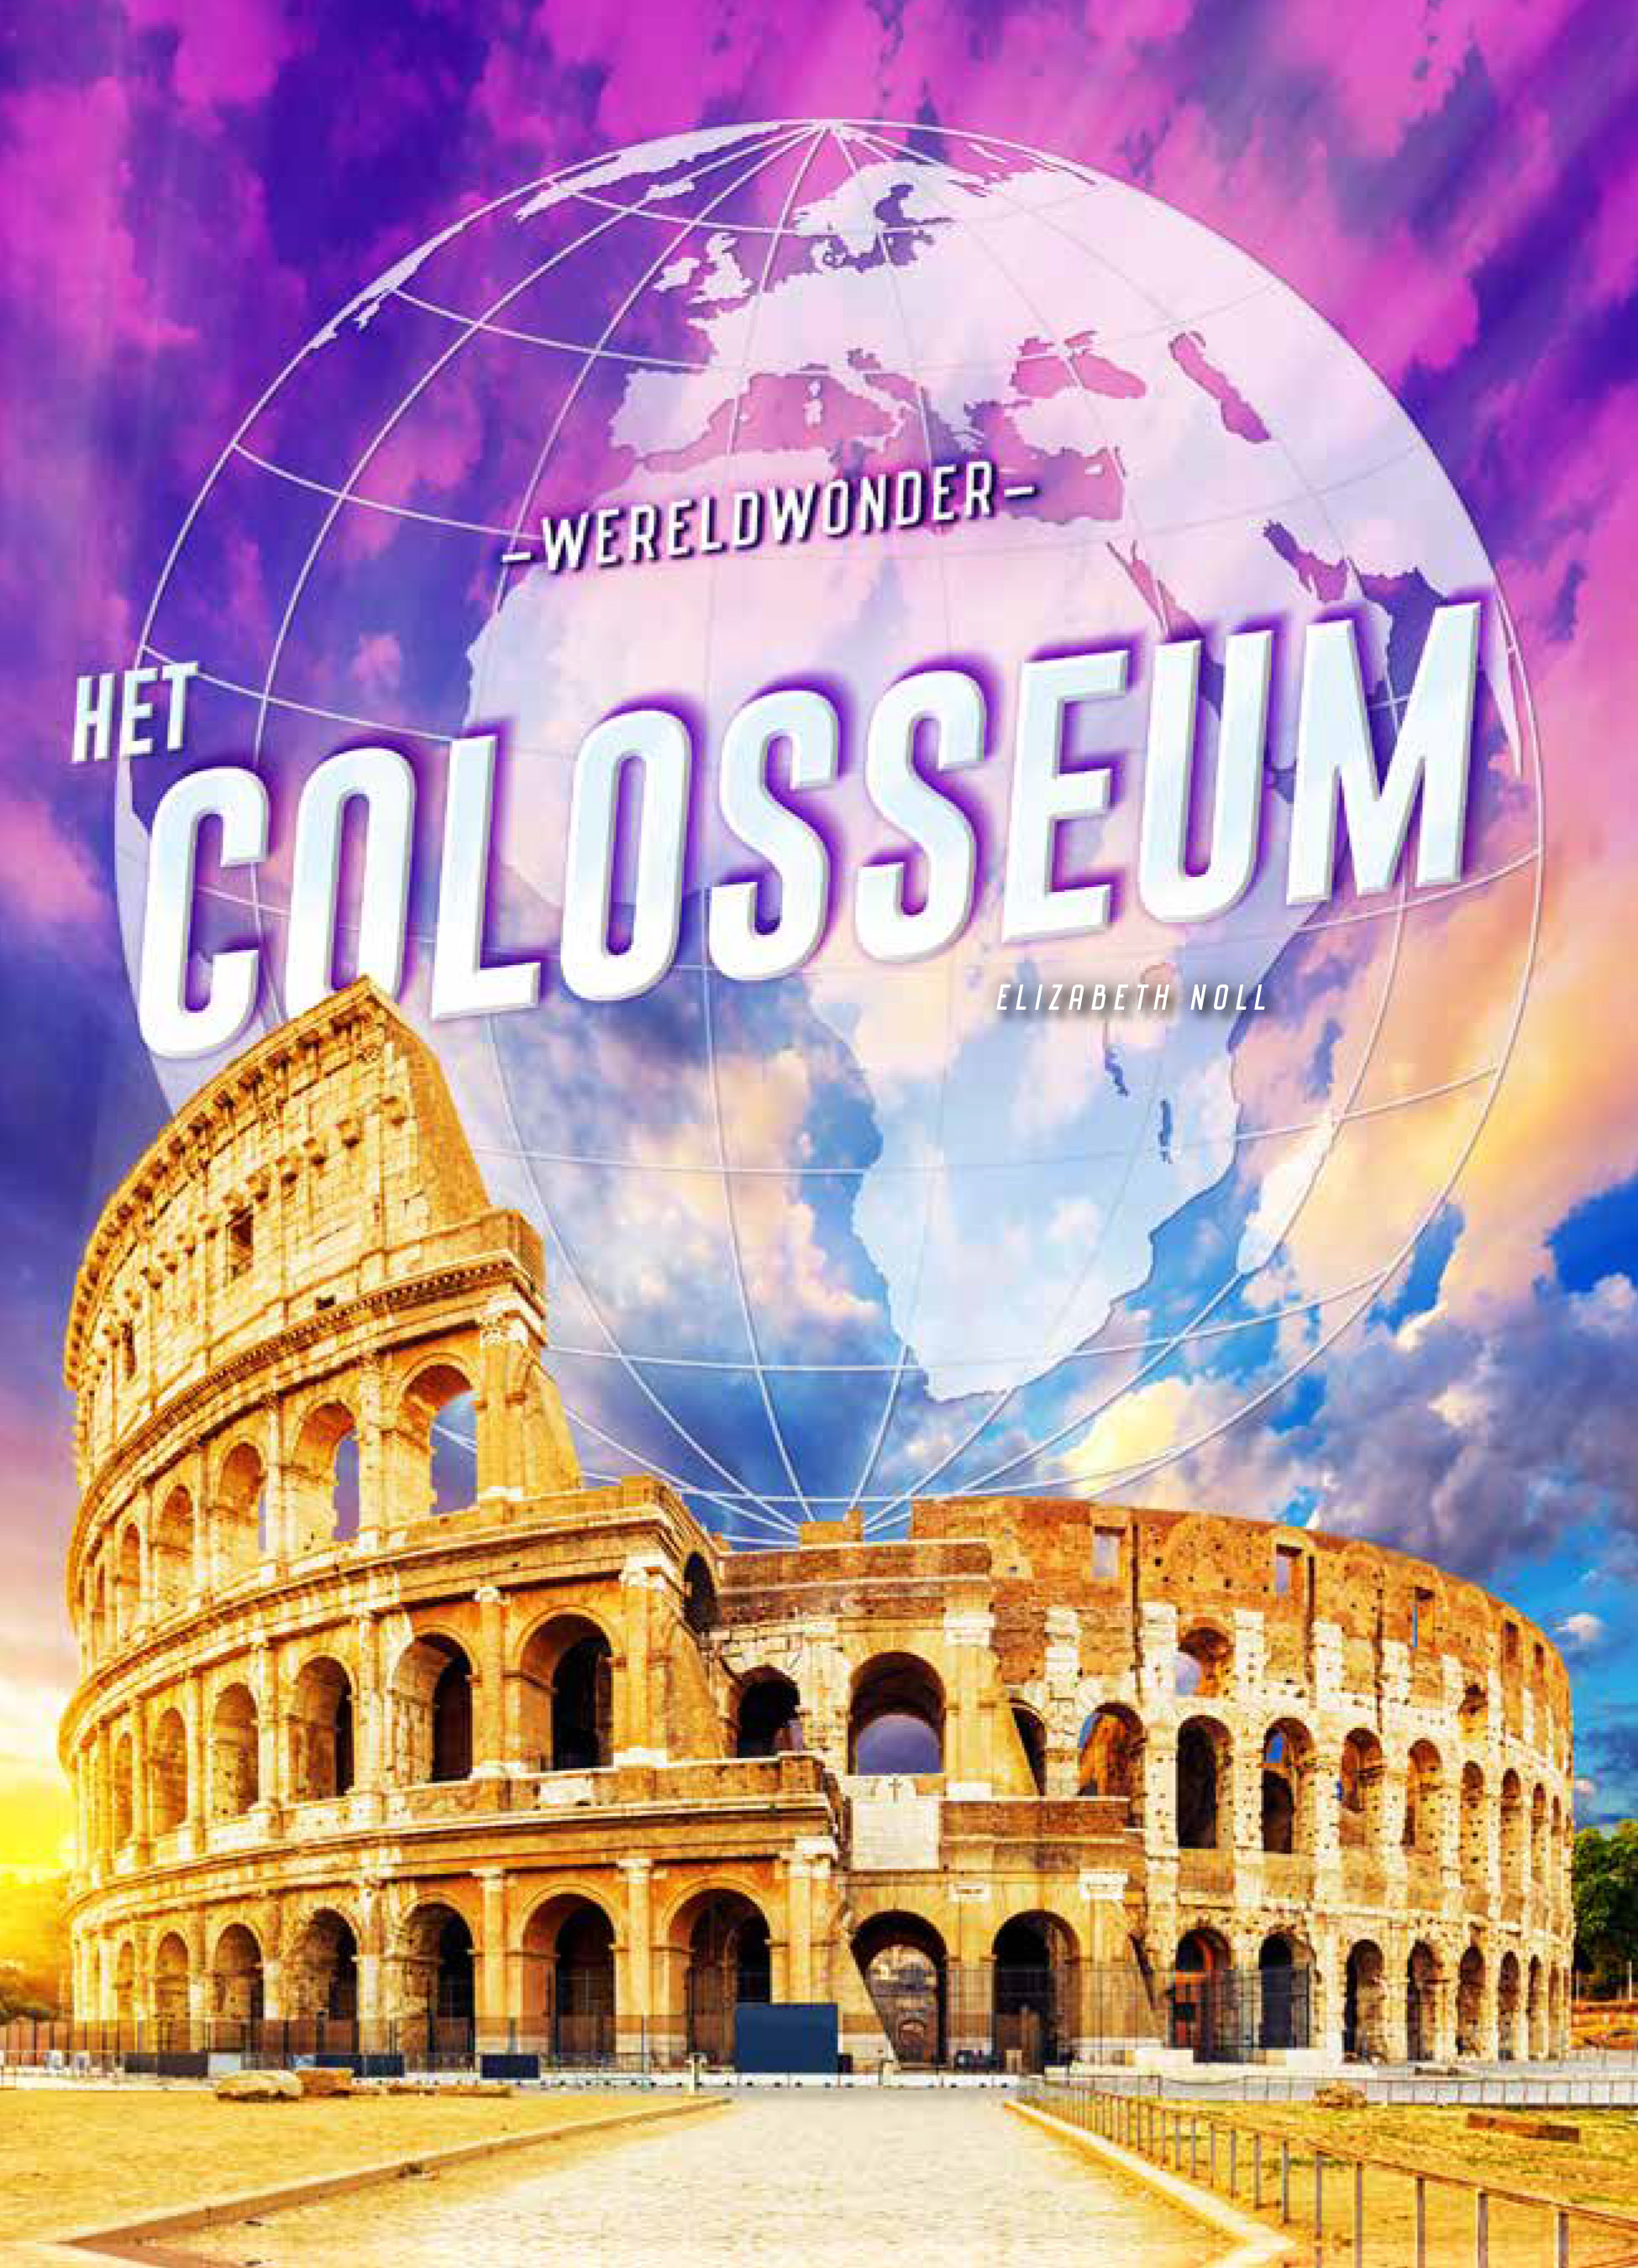 CNBWWO002 Het Colosseum